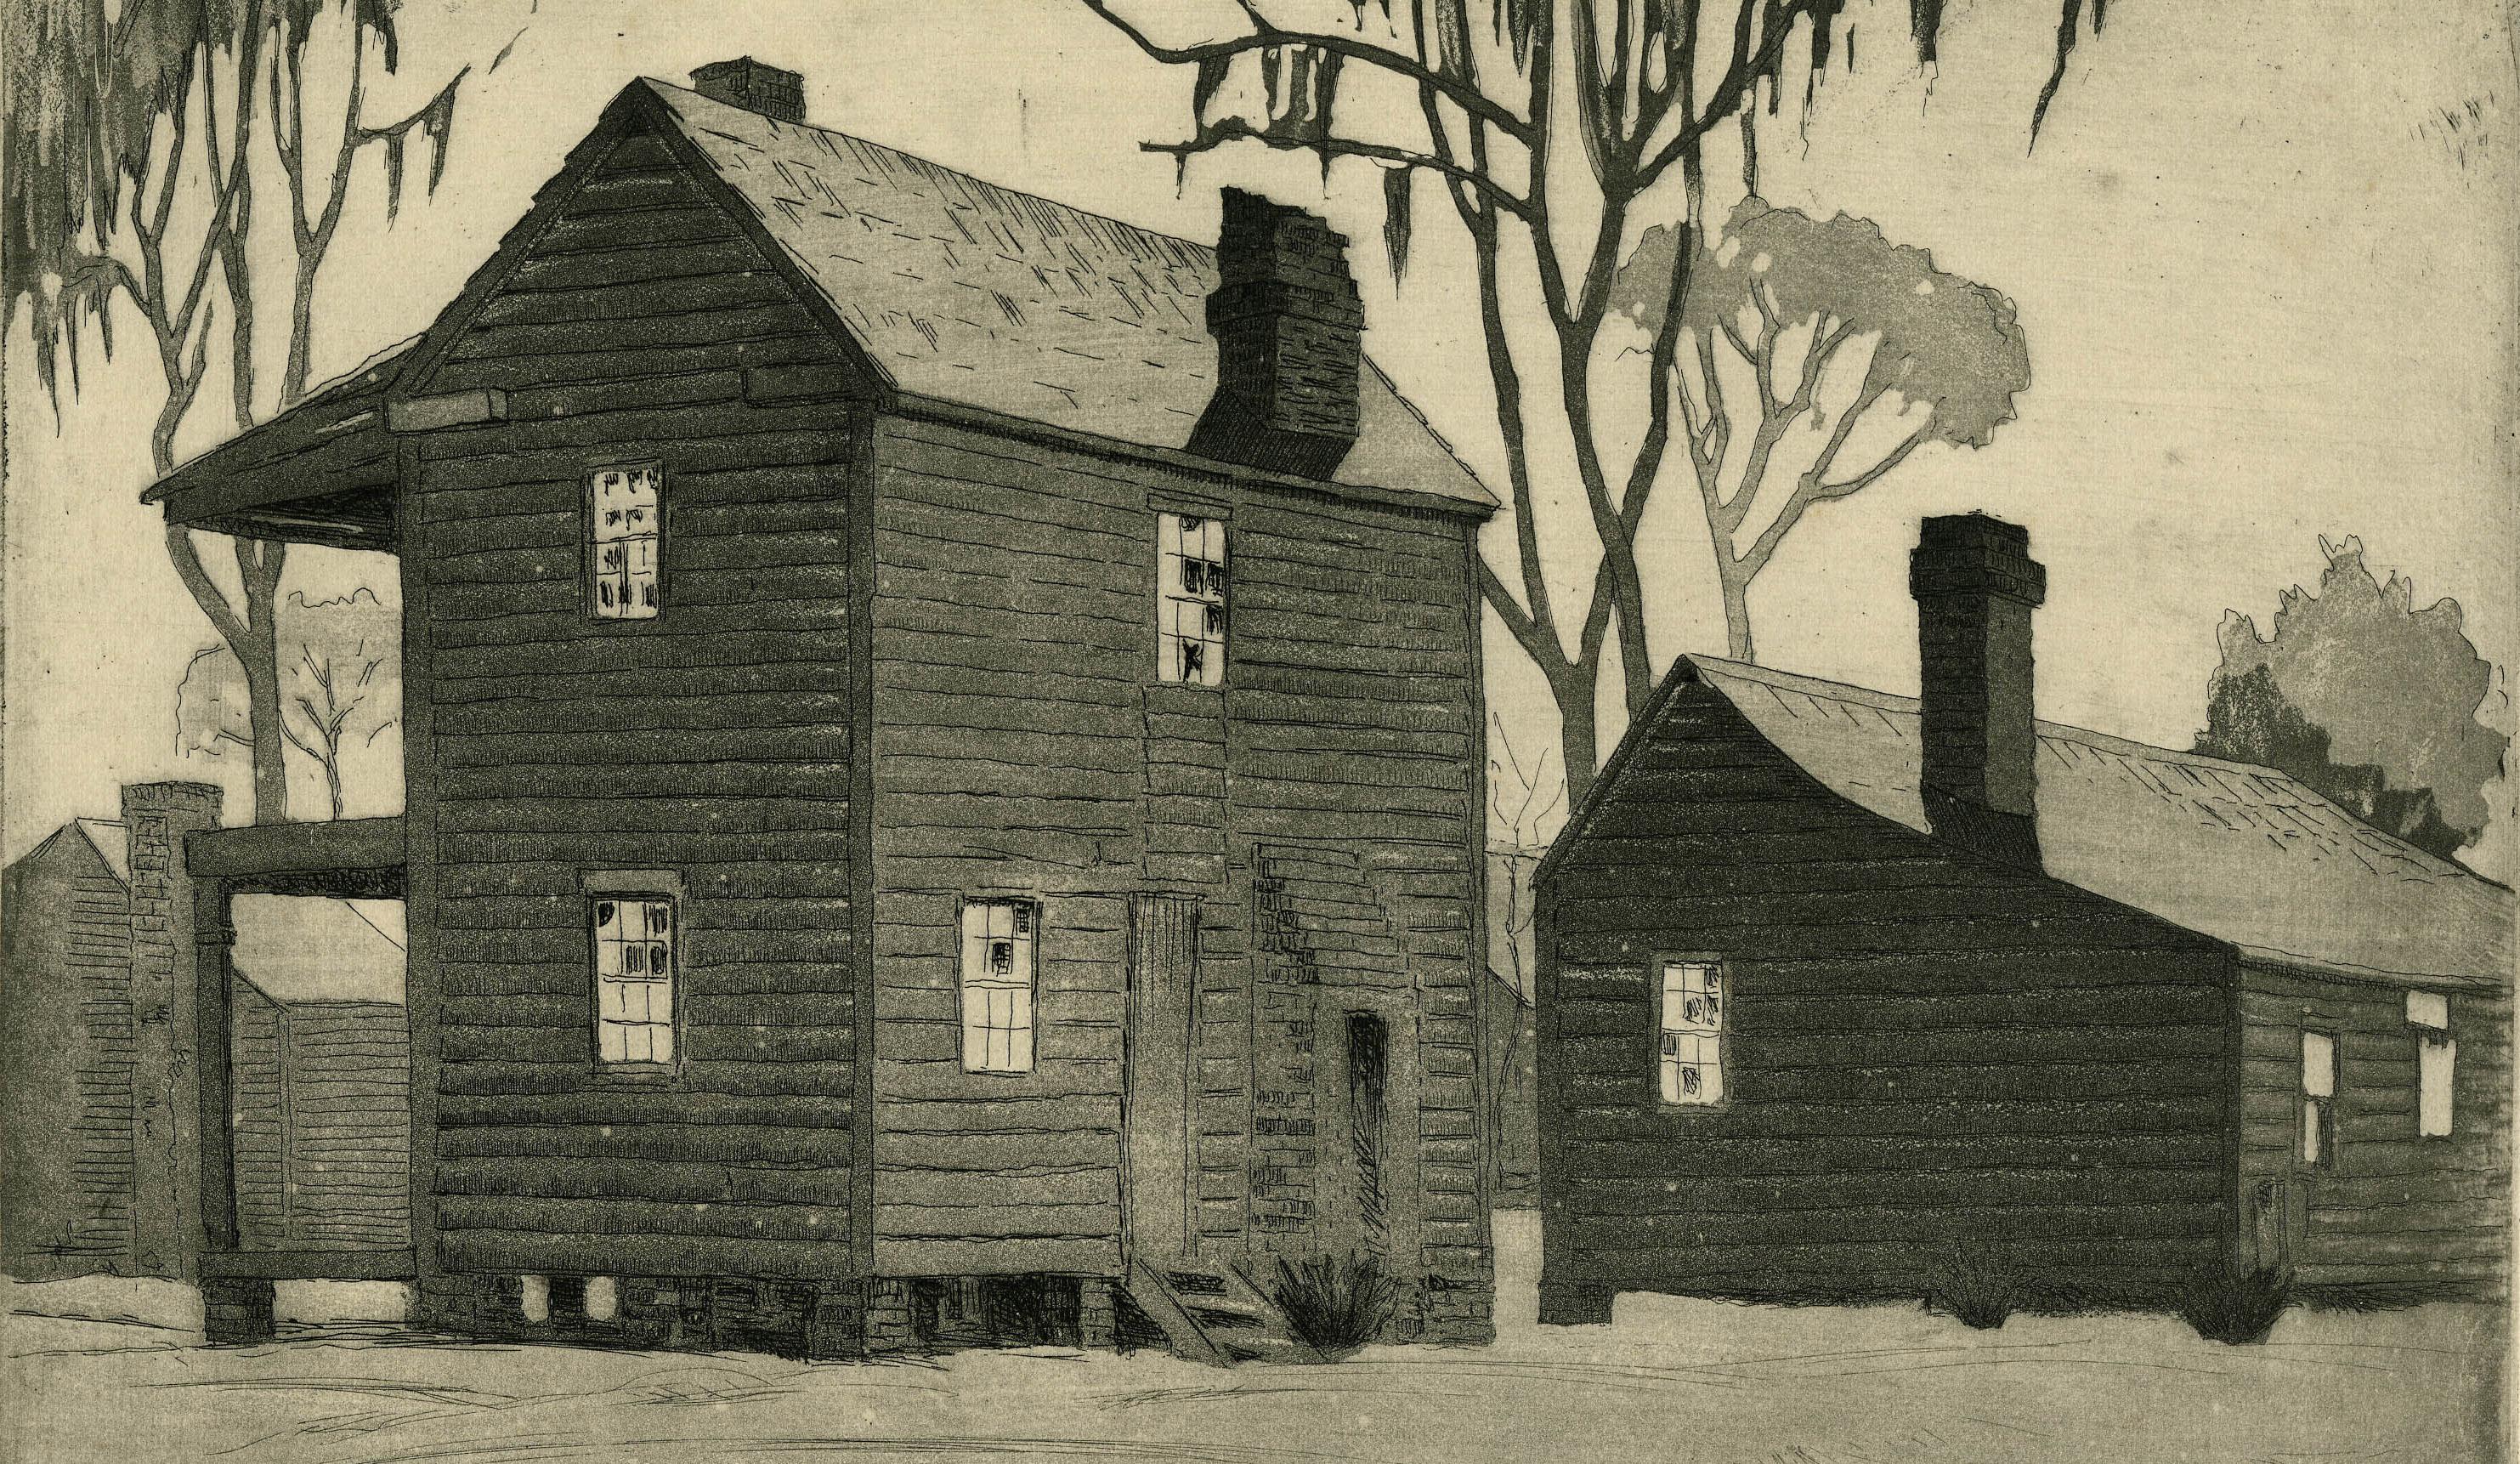 Desolation, S.C. oder Deserted Cabins, Beauford, S.C.
Radierung & Aquatinta, um 1930
Signiert vom Künstler mit Bleistift unten rechts (siehe Foto)
Vermerk 